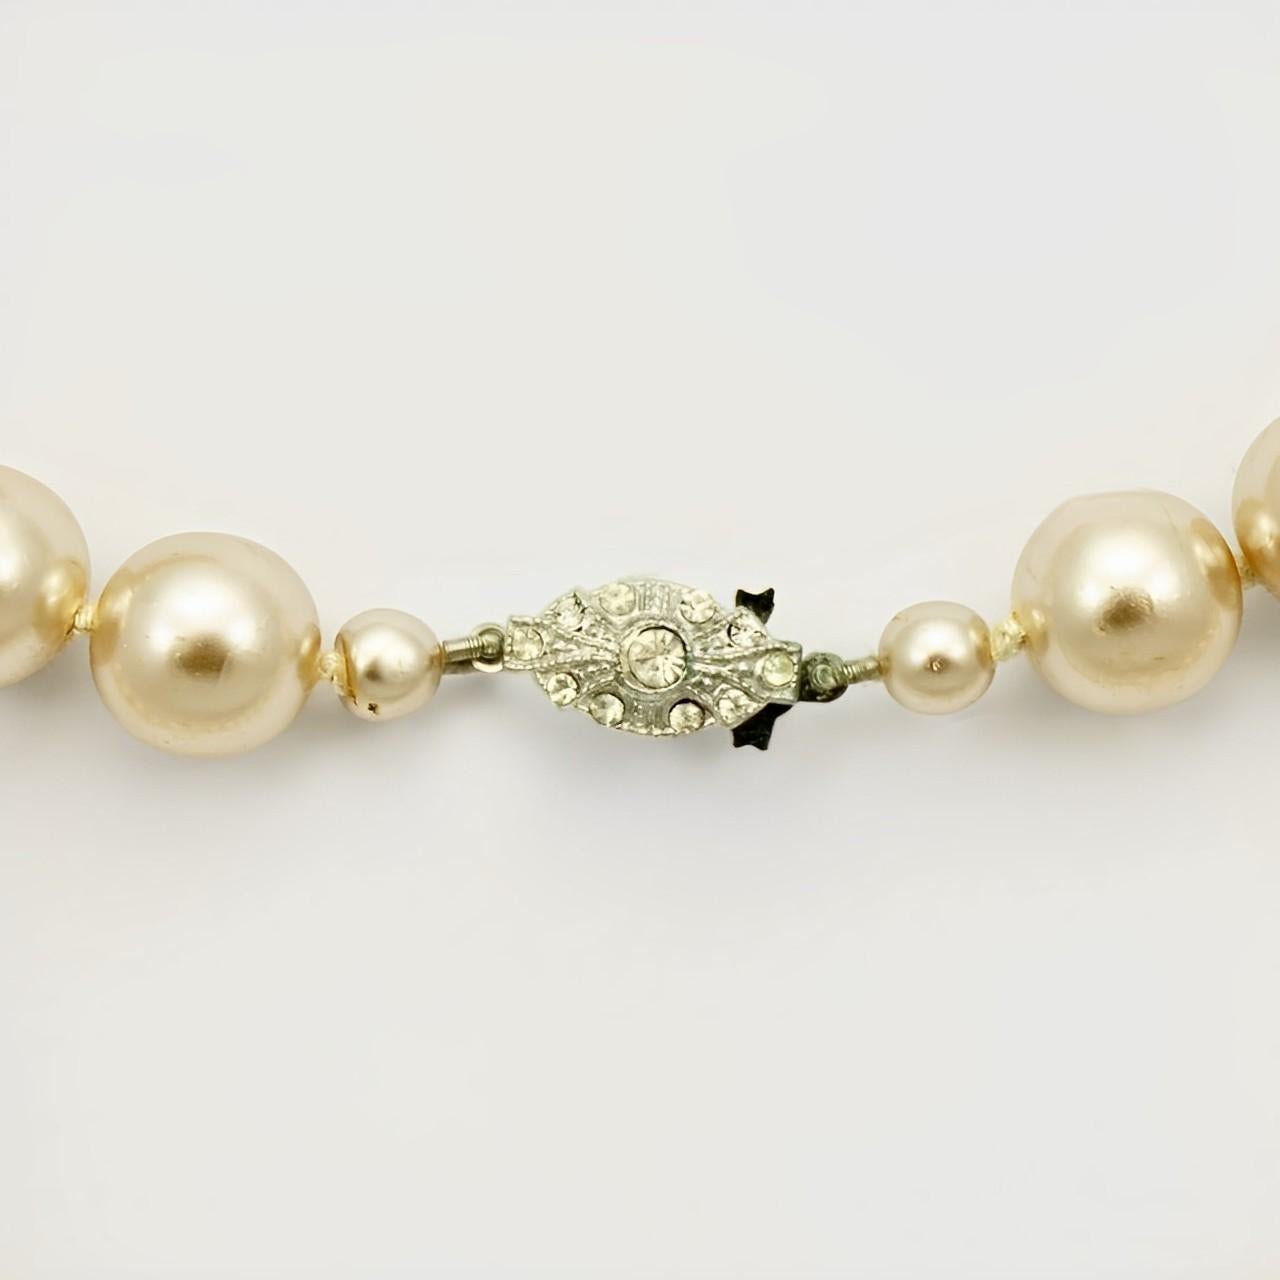 Magnifique collier de perles de verre champagne avec un fermoir en argent serti de strass. Les perles lustrées sont nouées entre chaque perle. Longueur 81 cm / 31.8 pouces. Les perles mesurent 12 mm. Le collier est en très bon état, avec peu d'usure